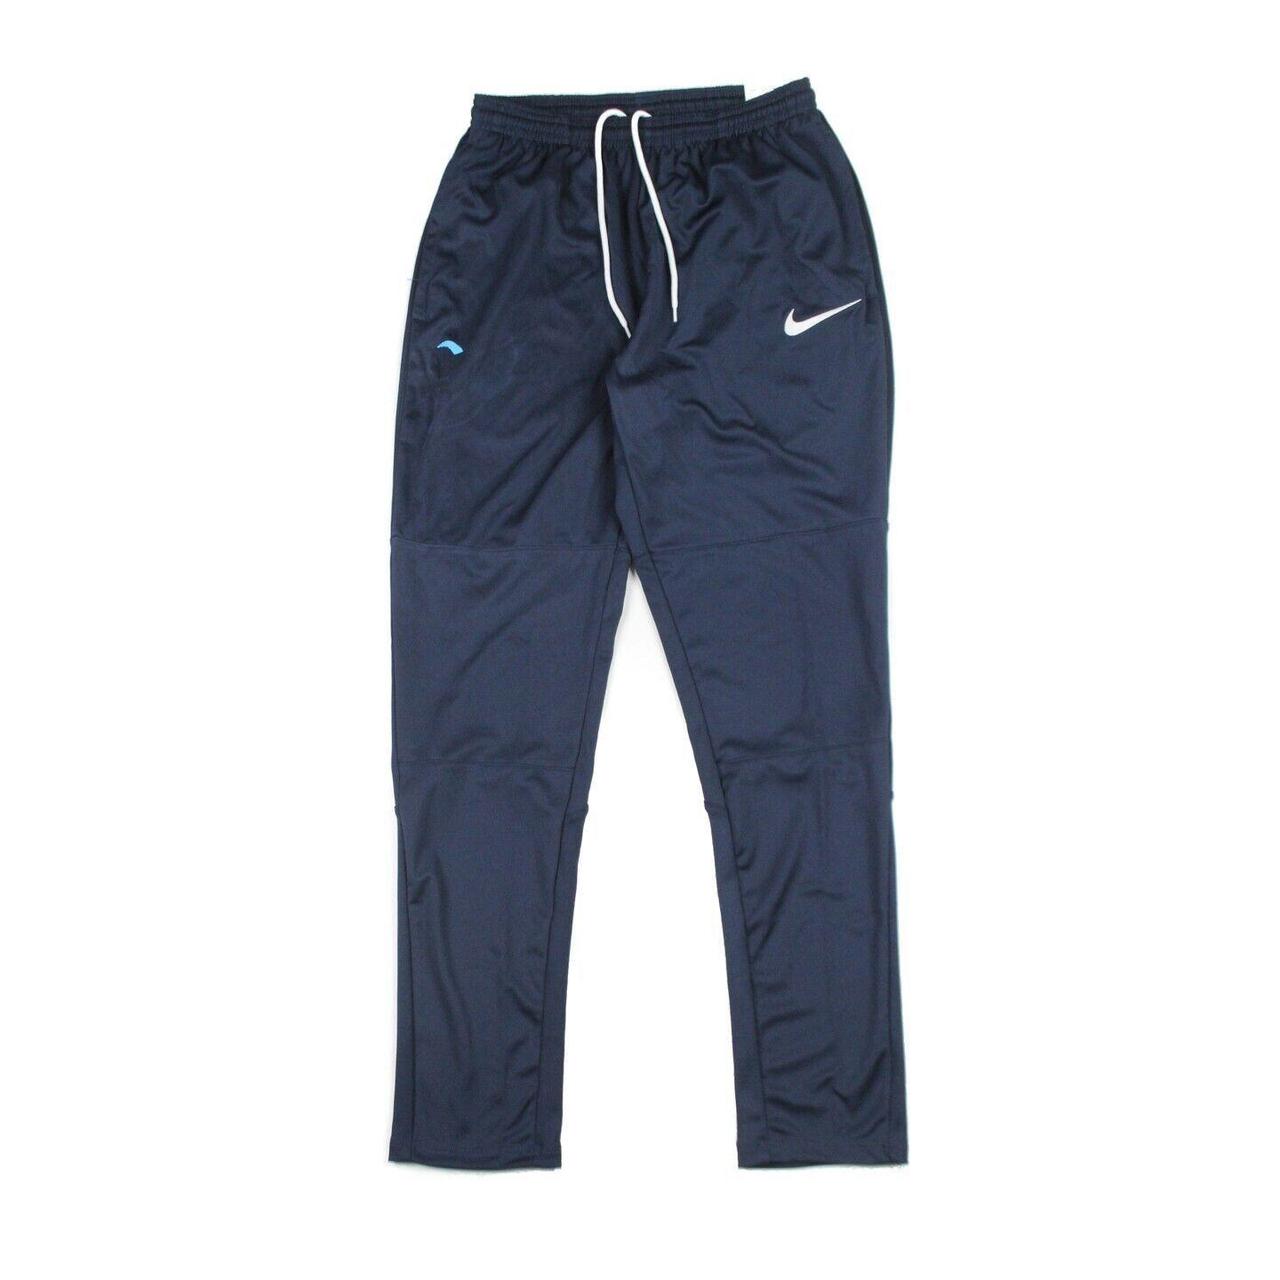 Nike Tracksuit Bottoms Jogging Pants Blue Standard... - Depop